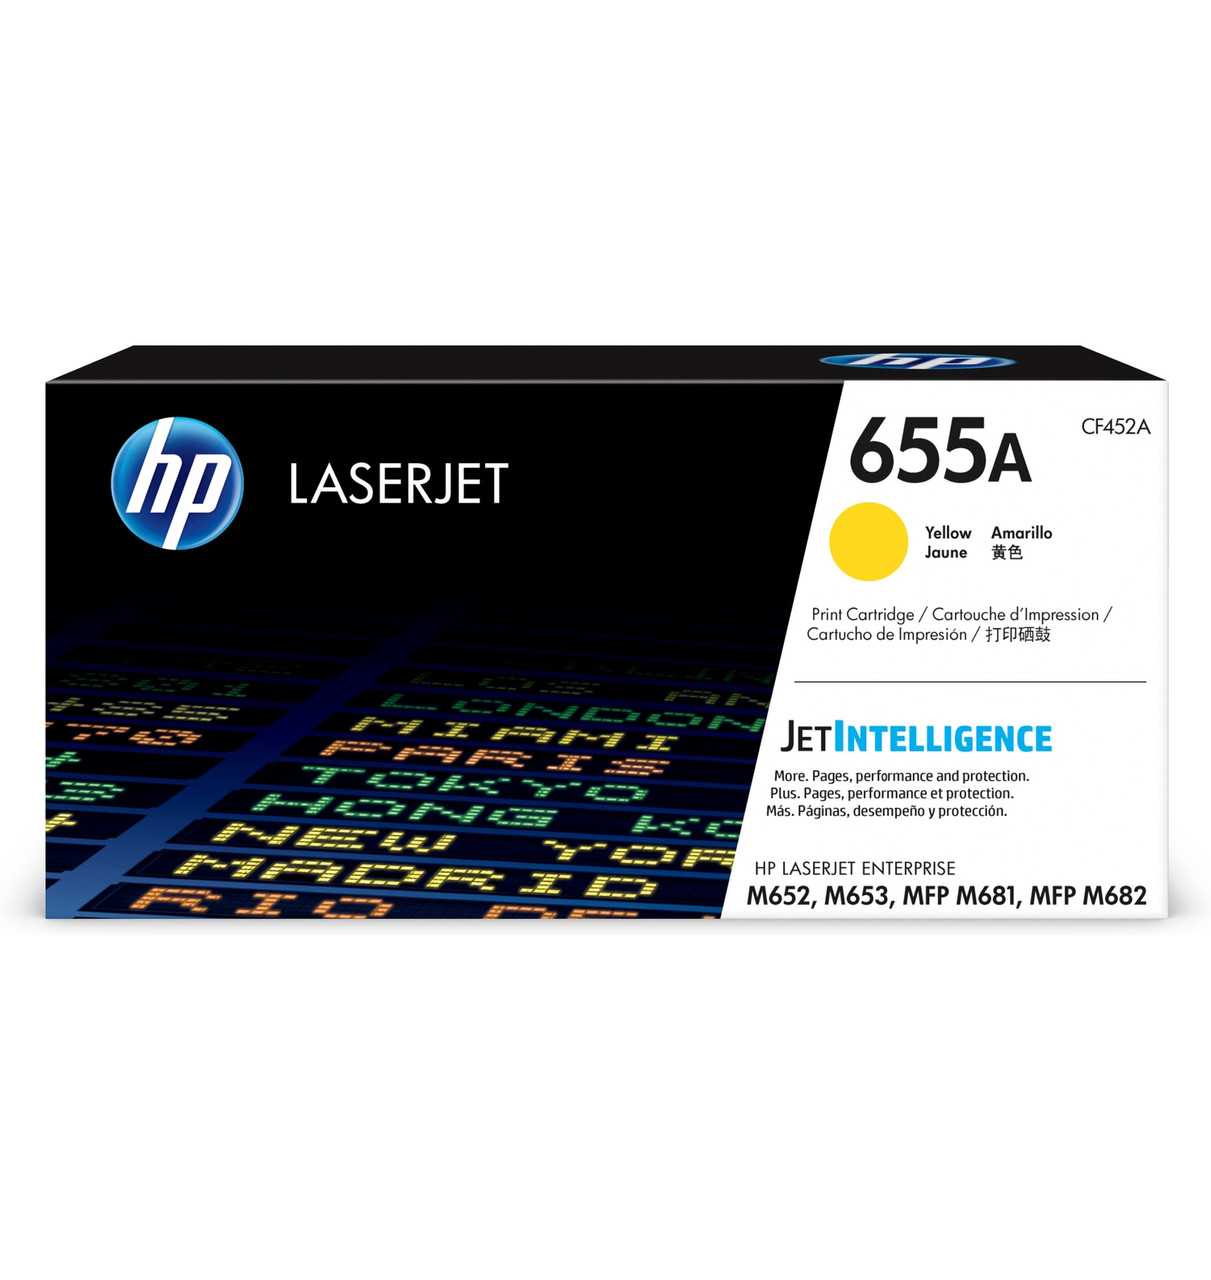 HP LaserJet Enterprise 655A Yellow Print Cartridge